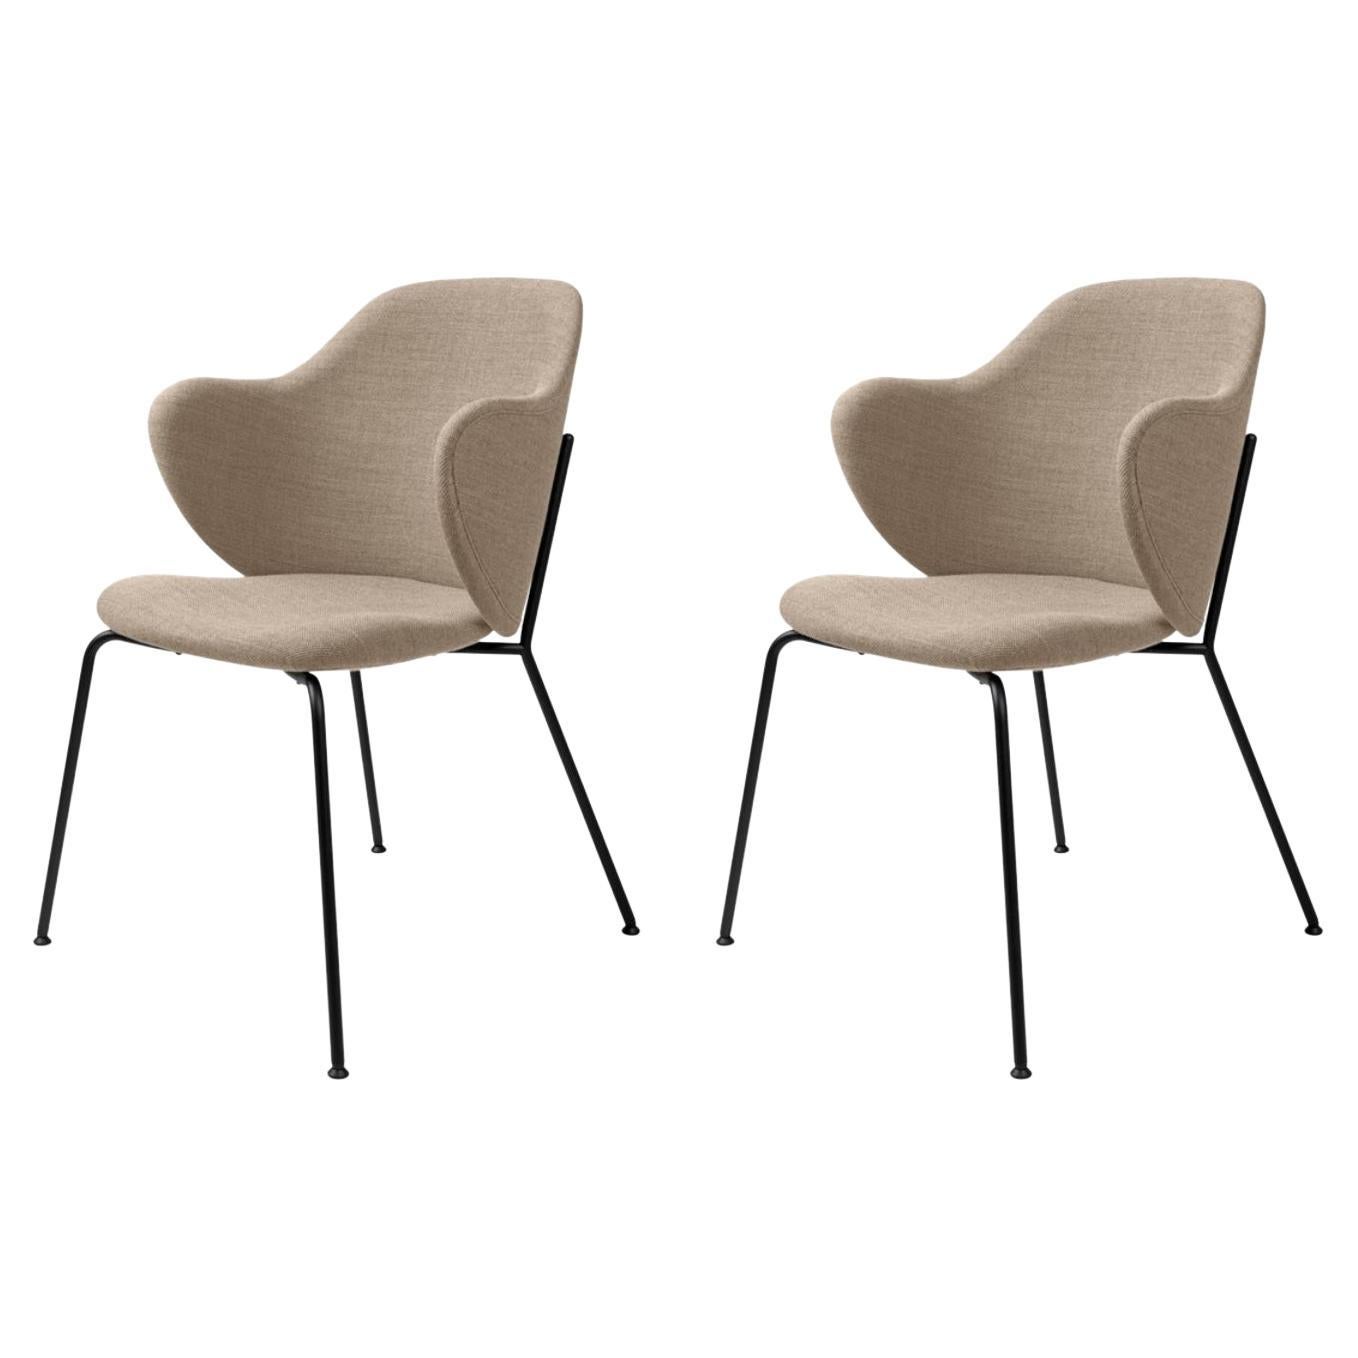 Set of 2 Beige Fiord Lassen Chairs by Lassen